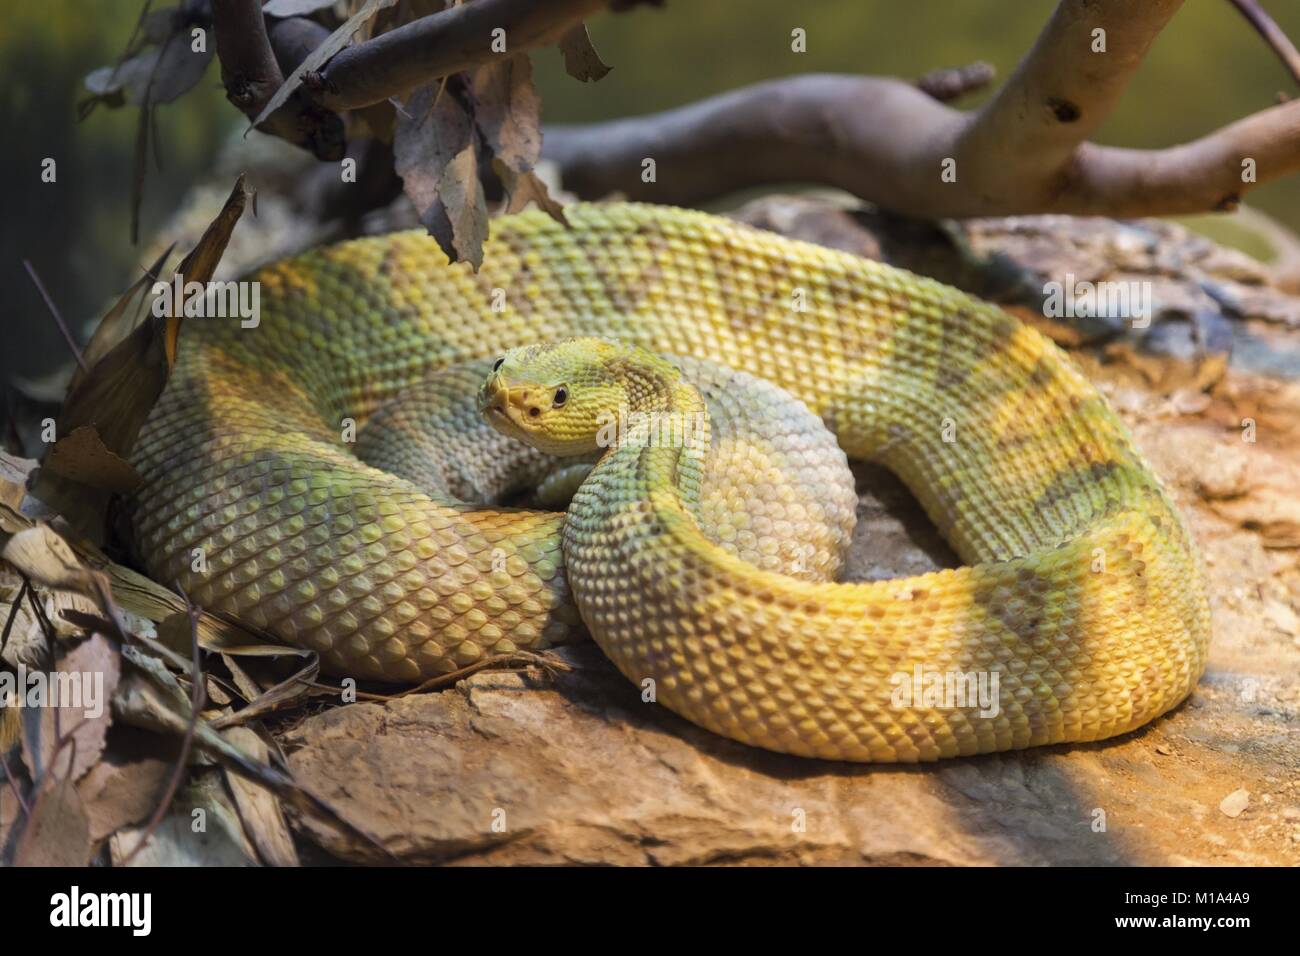 Bis Neotropischer Klapperschlange (Crotalus Simus, Zentralamerikanische Klapperschlange), eine giftige pit Viper in Reptile House in San Diego Zoo gewellt Gewellt Stockfoto